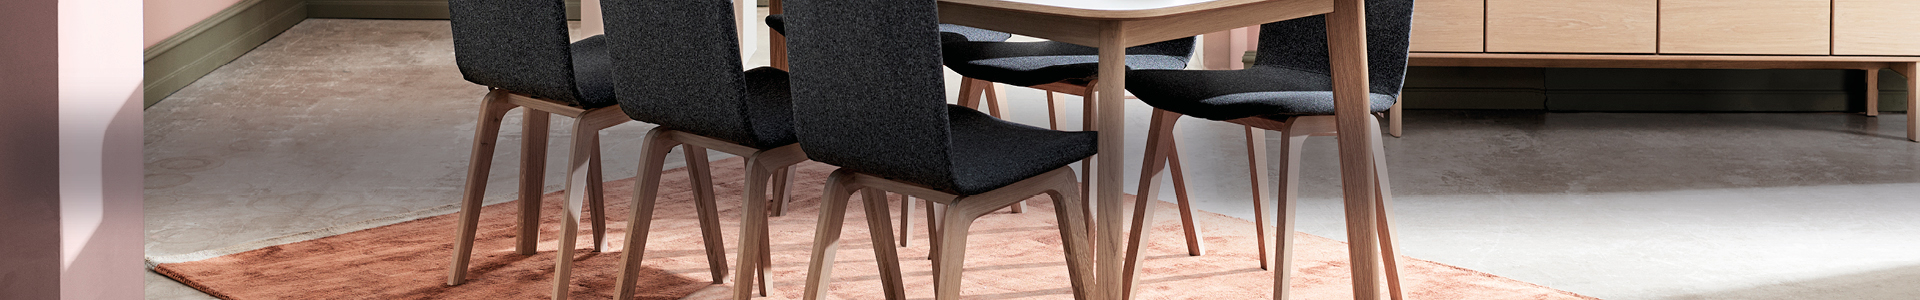 strubehoved Stifte bekendtskab champignon Spisebordsstole | Køb nye spisestole til stuen | Møblér